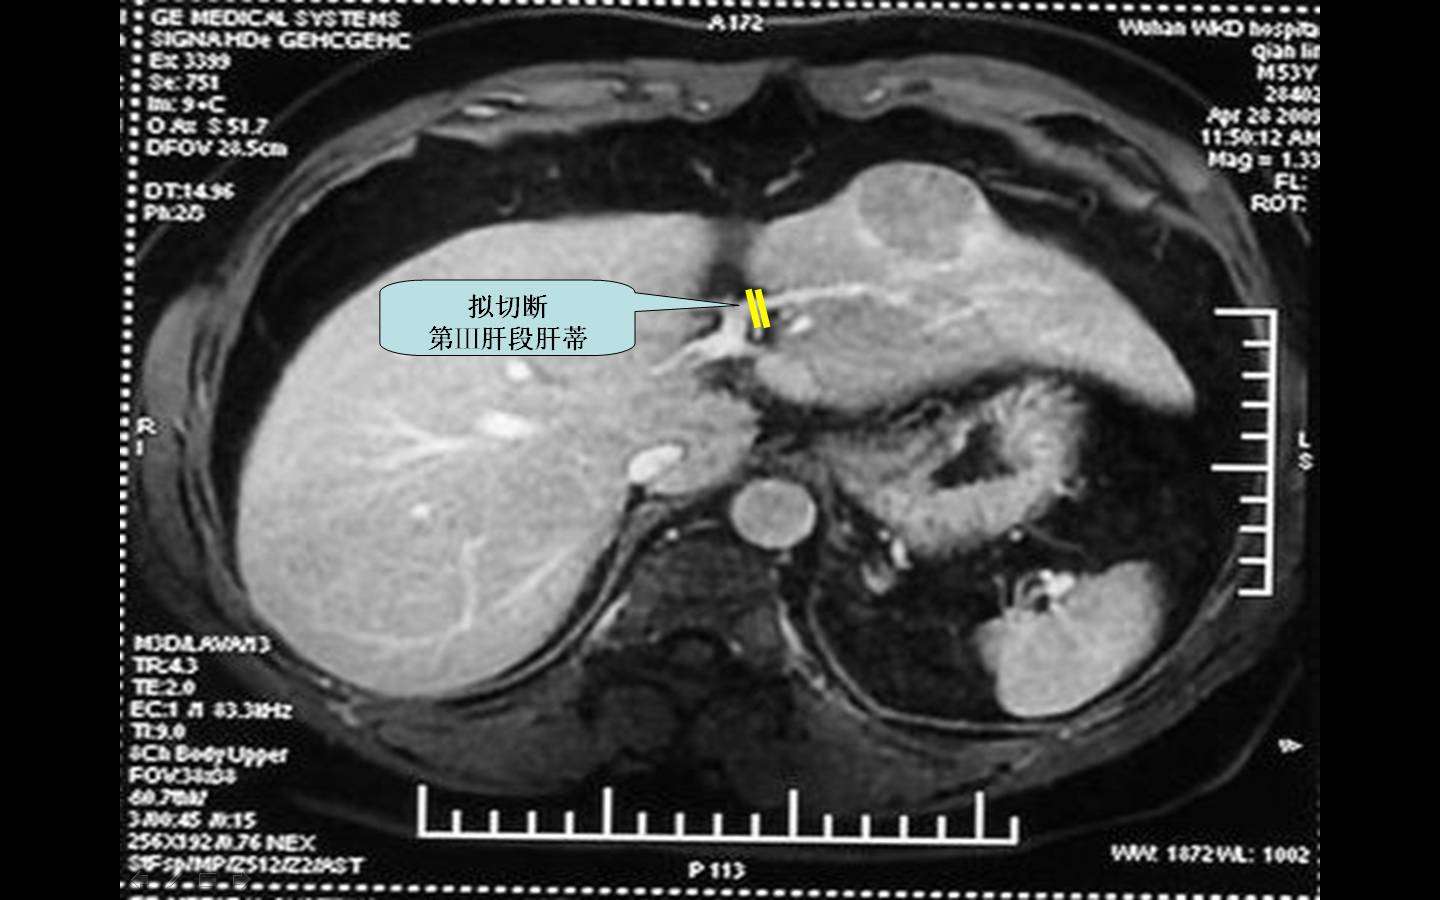 肝蒂横断法:在实施肝癌切除时,摒弃以往切开glisson鞘分别切断门静脉